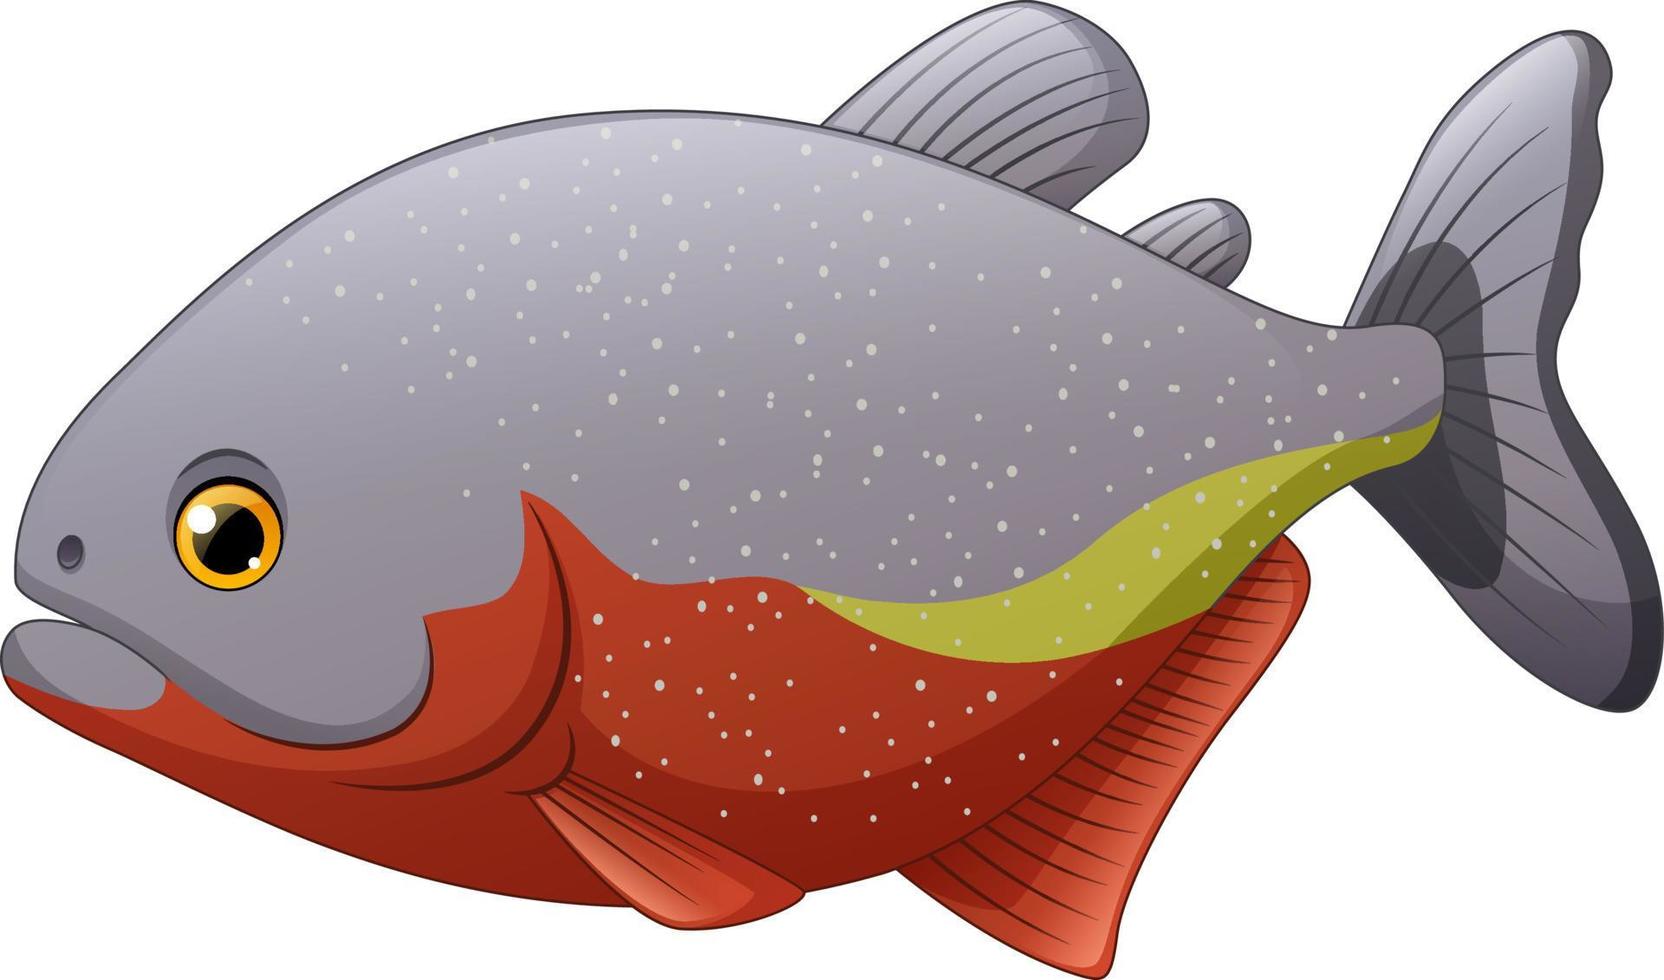 tecknad piranha fisk isolerad på vit bakgrund vektor